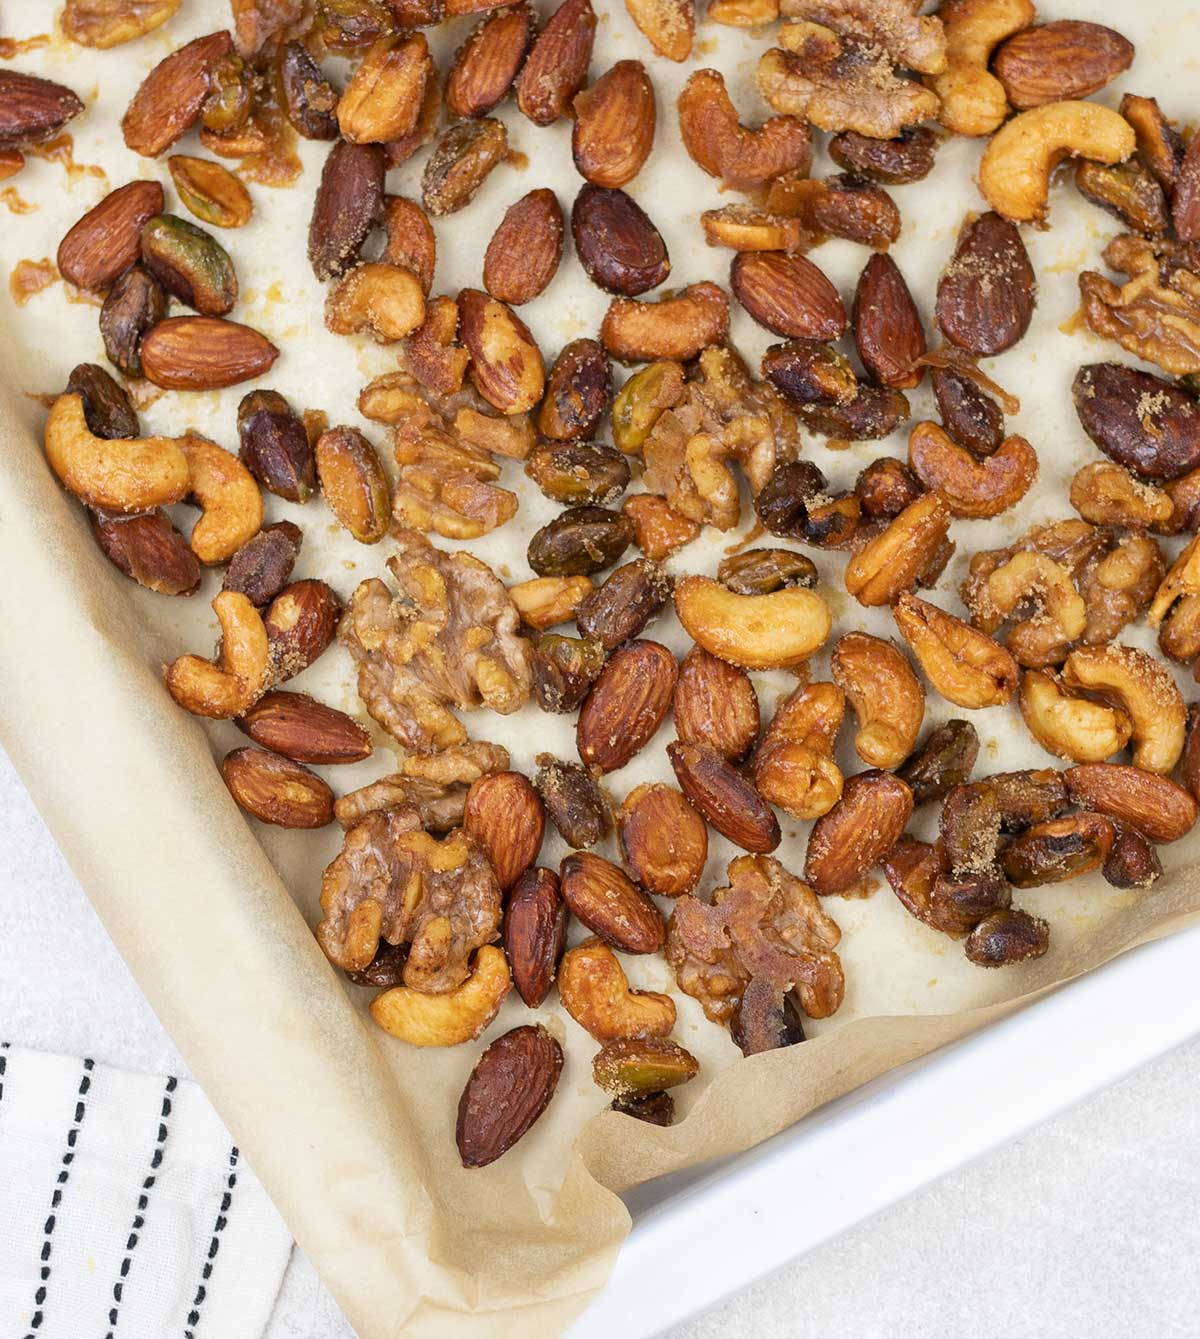 Honey Roasted Mixed Nuts on a baking tray.